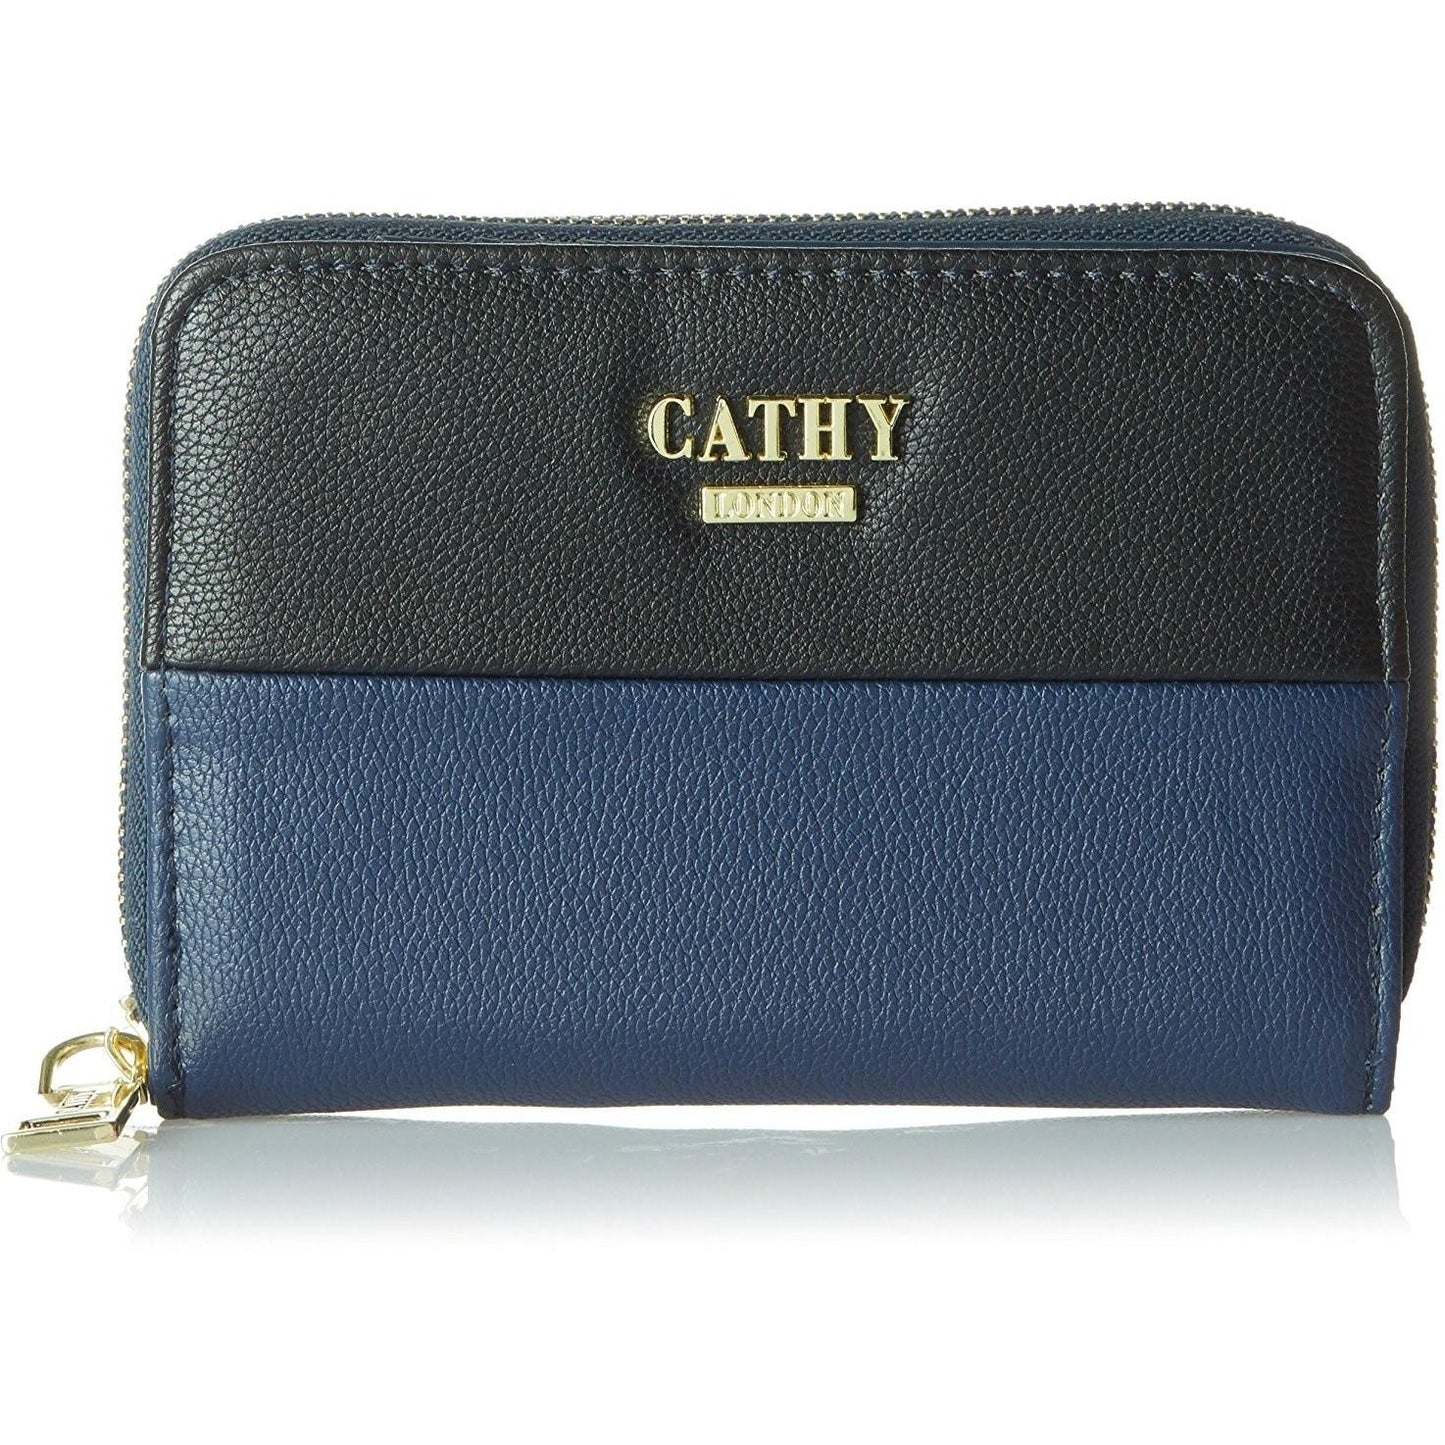 Cathy London Women's PU Wallet